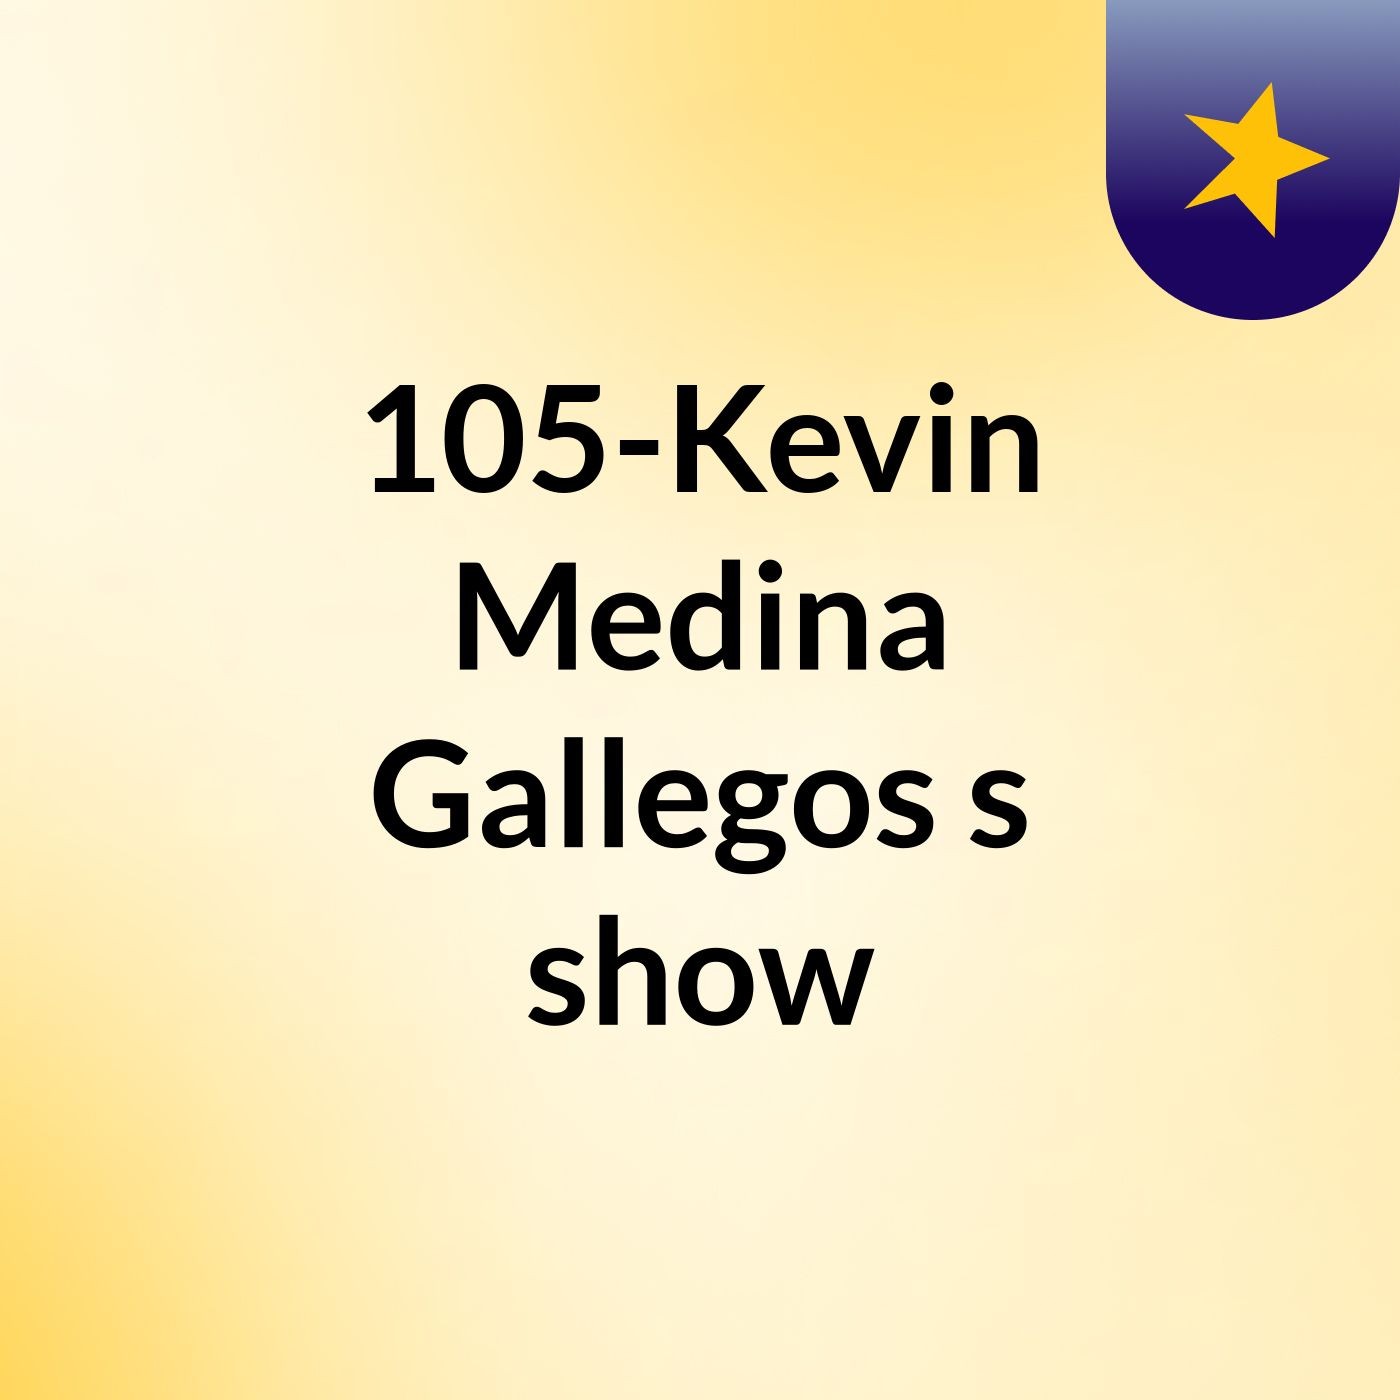 105-Kevin Medina Gallegos's show